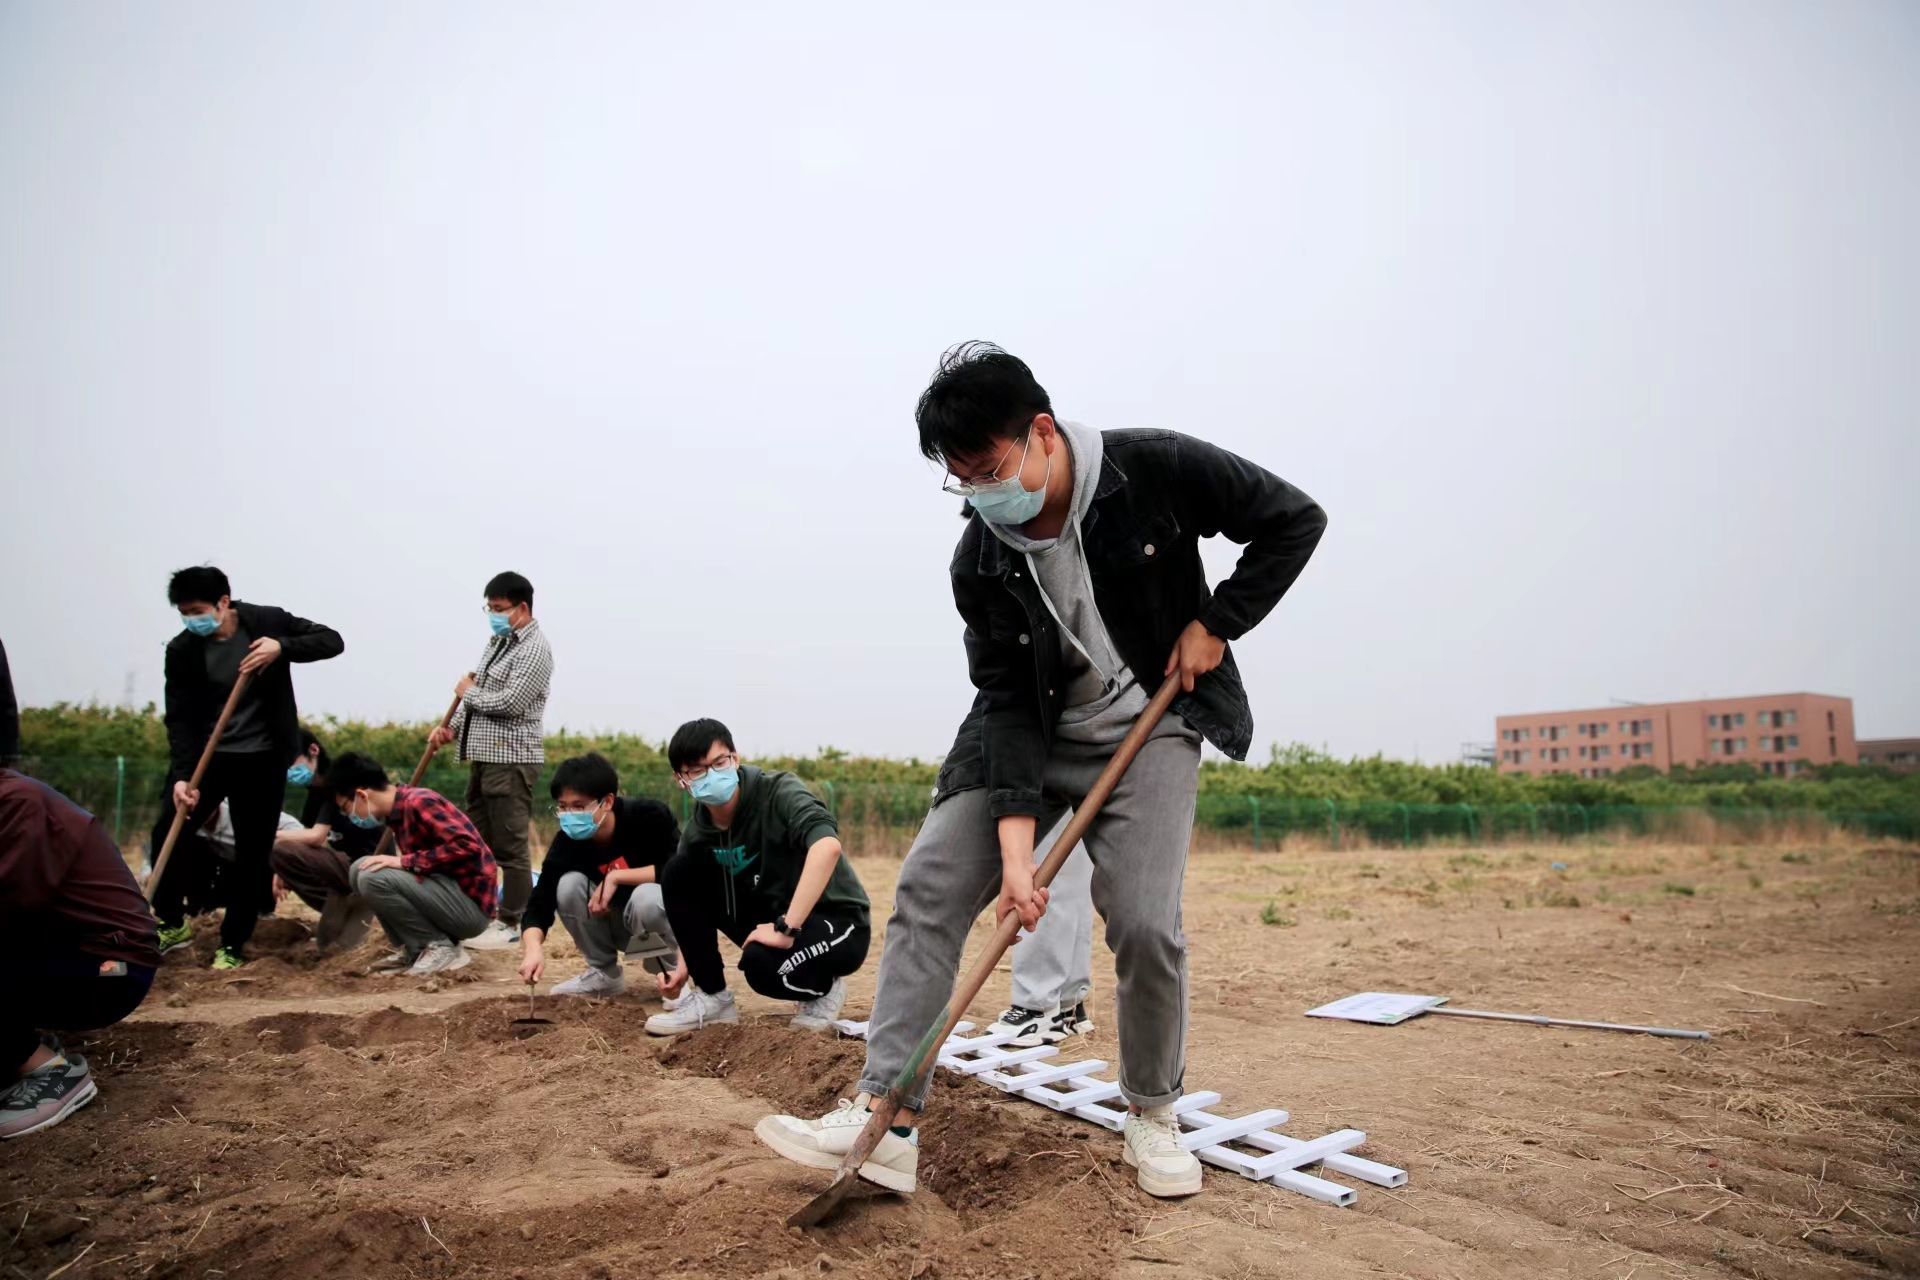 中国农业大学新闻网 媒体农大/科技之窗 农业学子特殊的毕业季 有硕士生回家种地创业